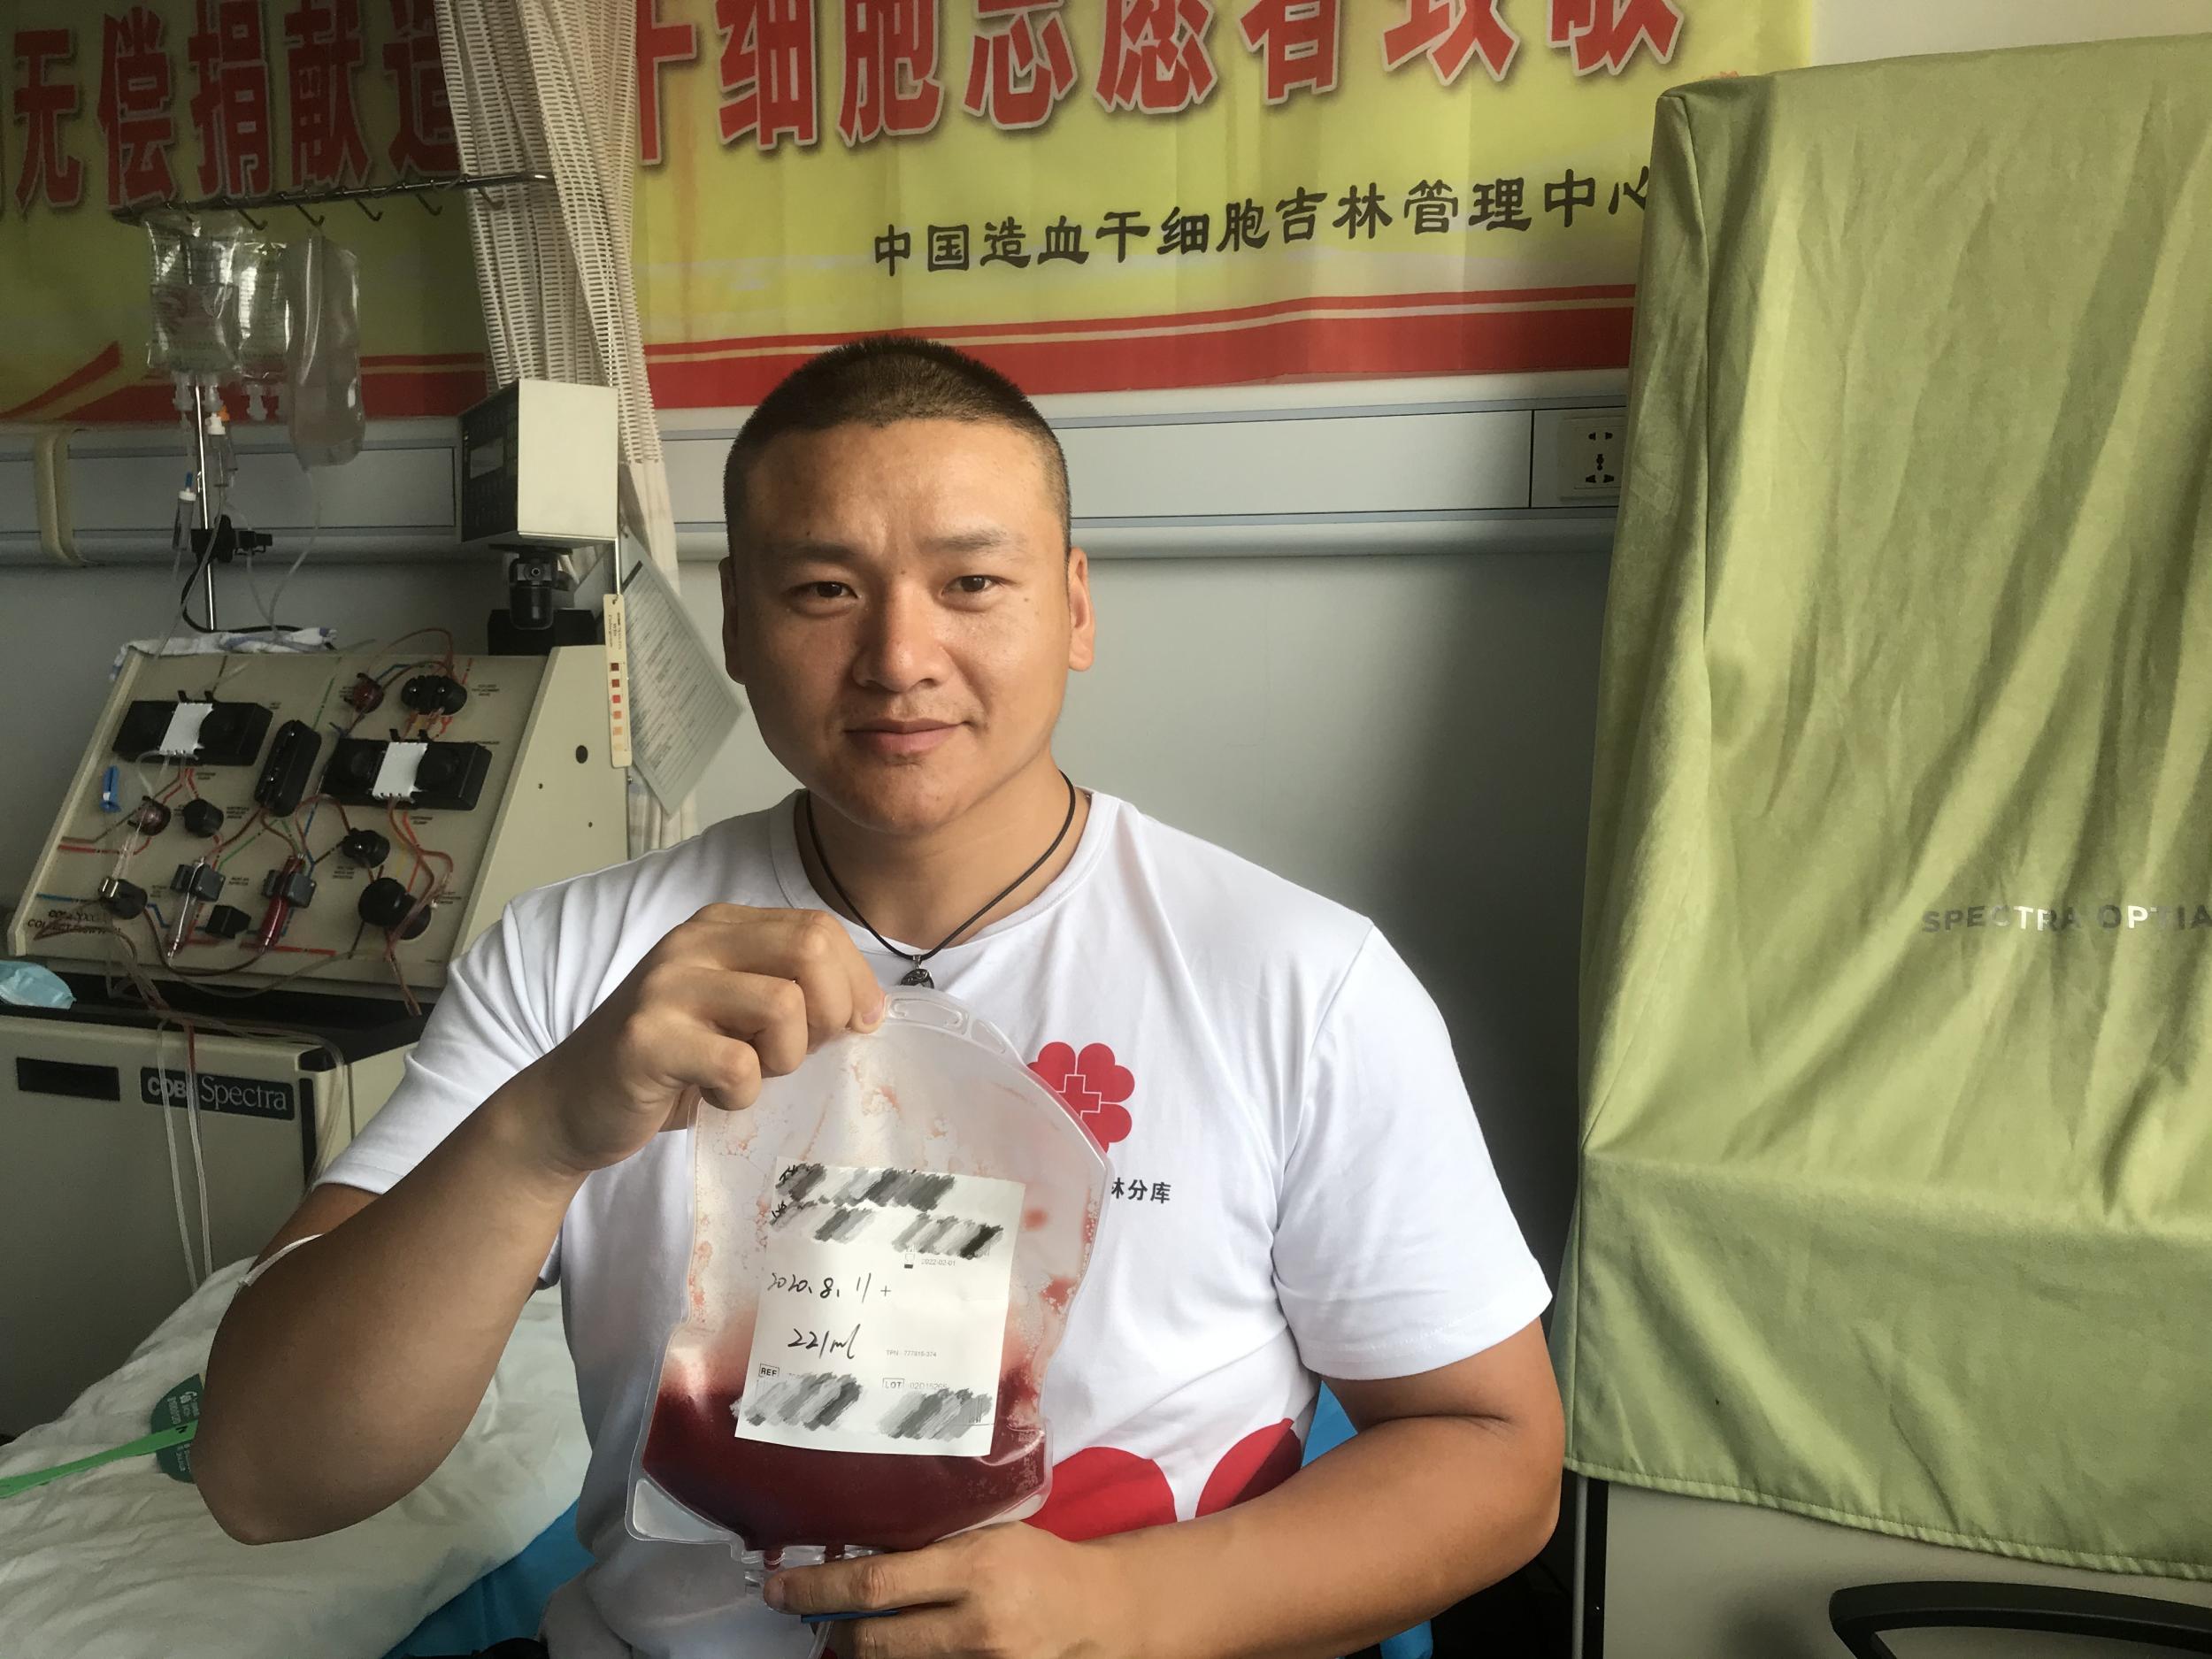 坚持无偿献血6年的吉林小伙再次捐献造血干细胞 成为吉林省第93例捐献者